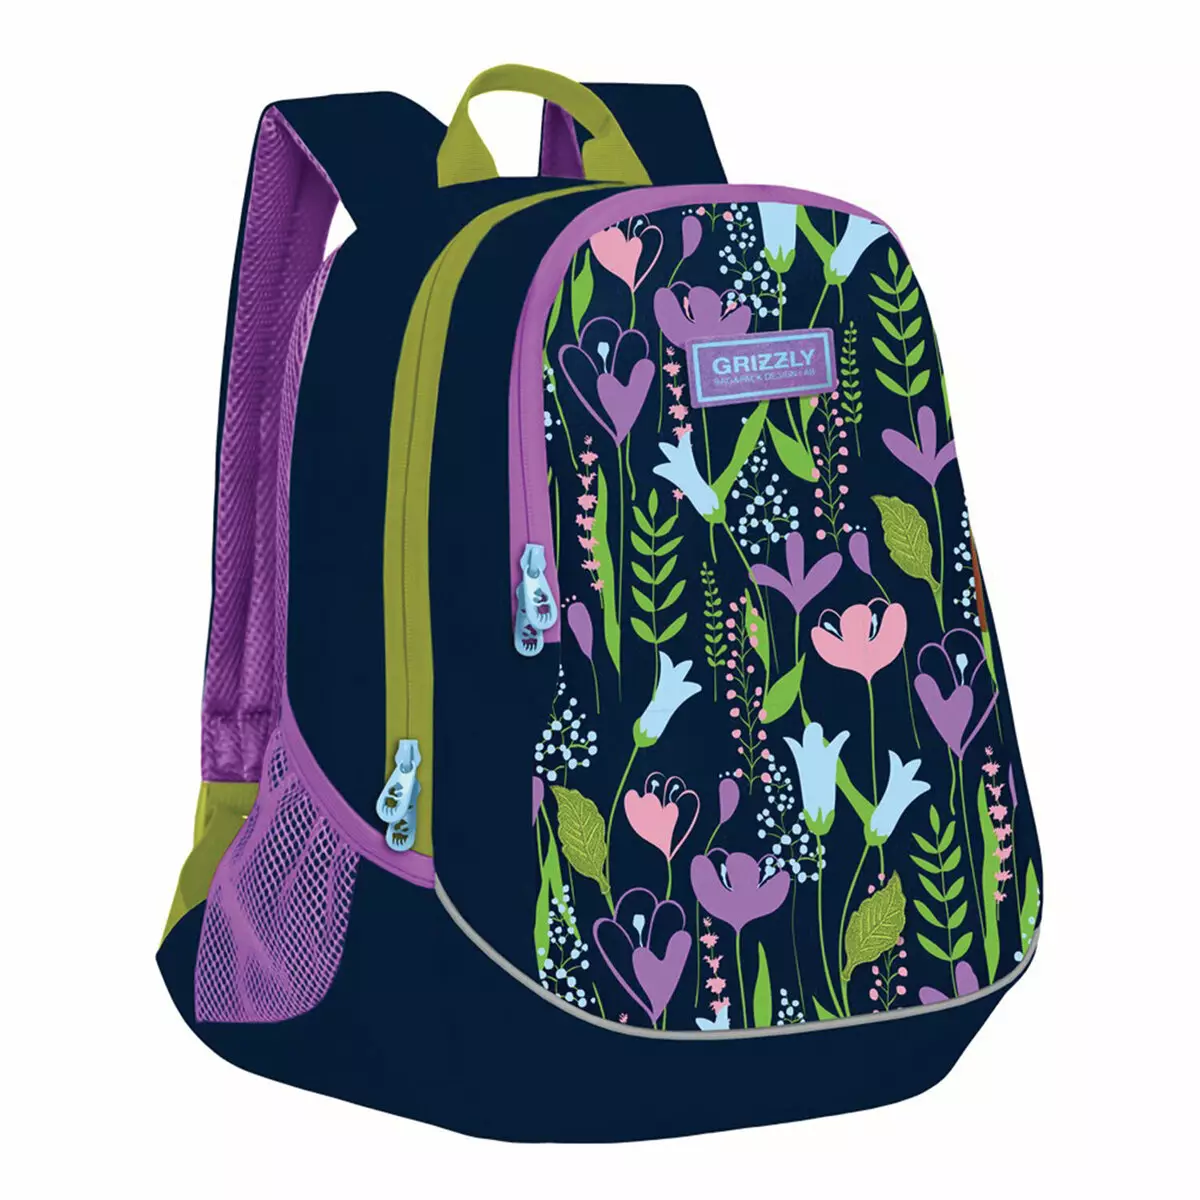 그리즐리 배낭 : 첫 번째 학년 및 신발, 청소년, 분홍색 및 검정, 회색 및 기타 여성 모델의 가방을위한 학교 정형 레인저스 2537_57